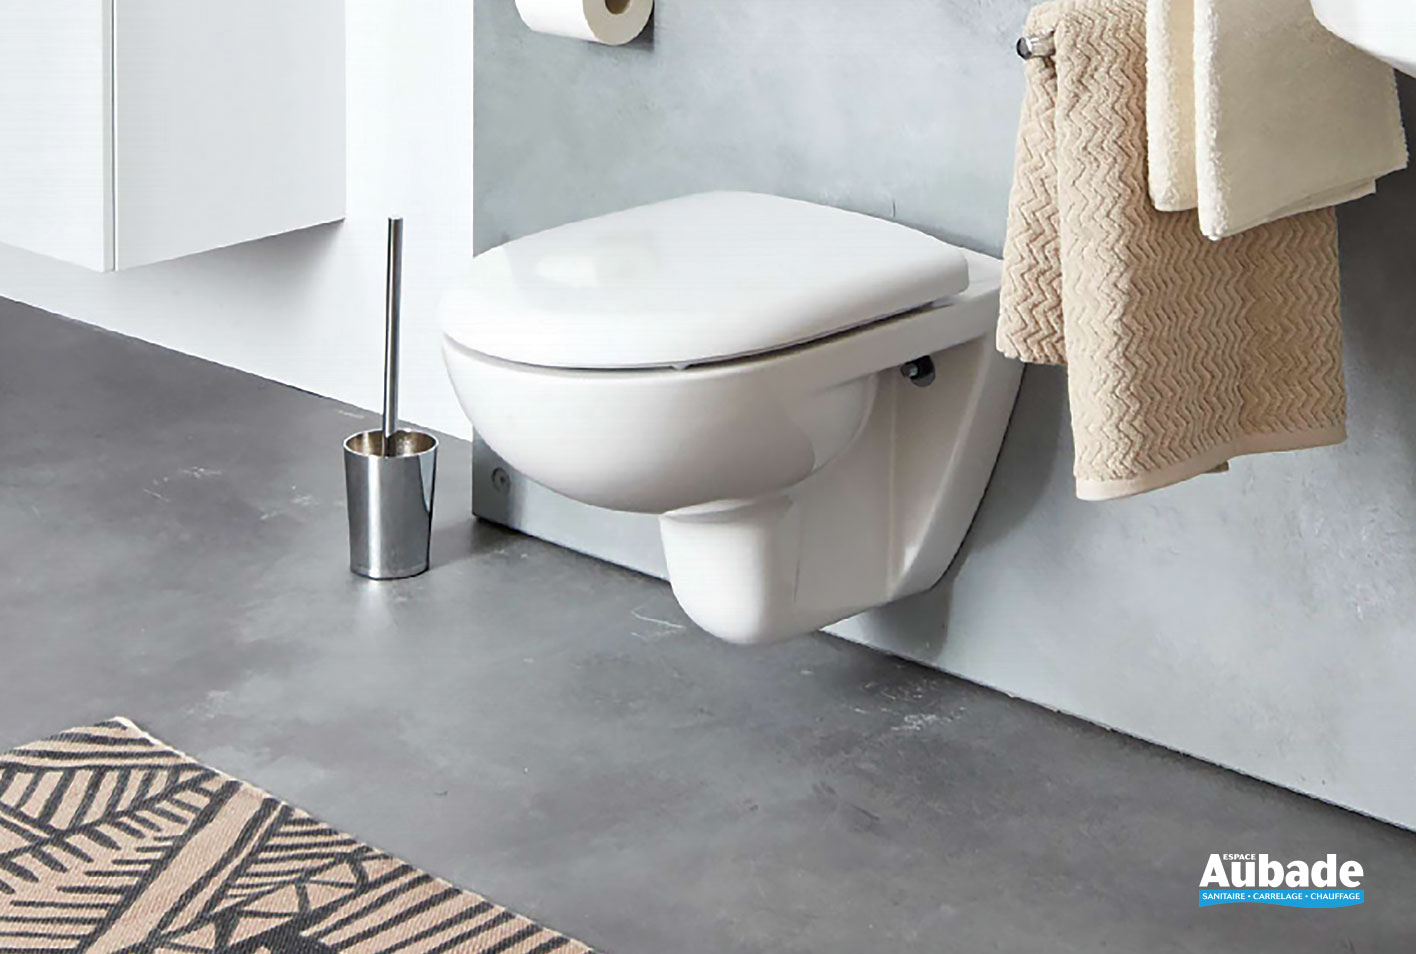 https://www.espace-aubade.fr/uploads/product/picture/1416x954/toilettes-wc-vigour-clivia-cuvette-suspendue-compacte-sans-bride-1-2021.jpg